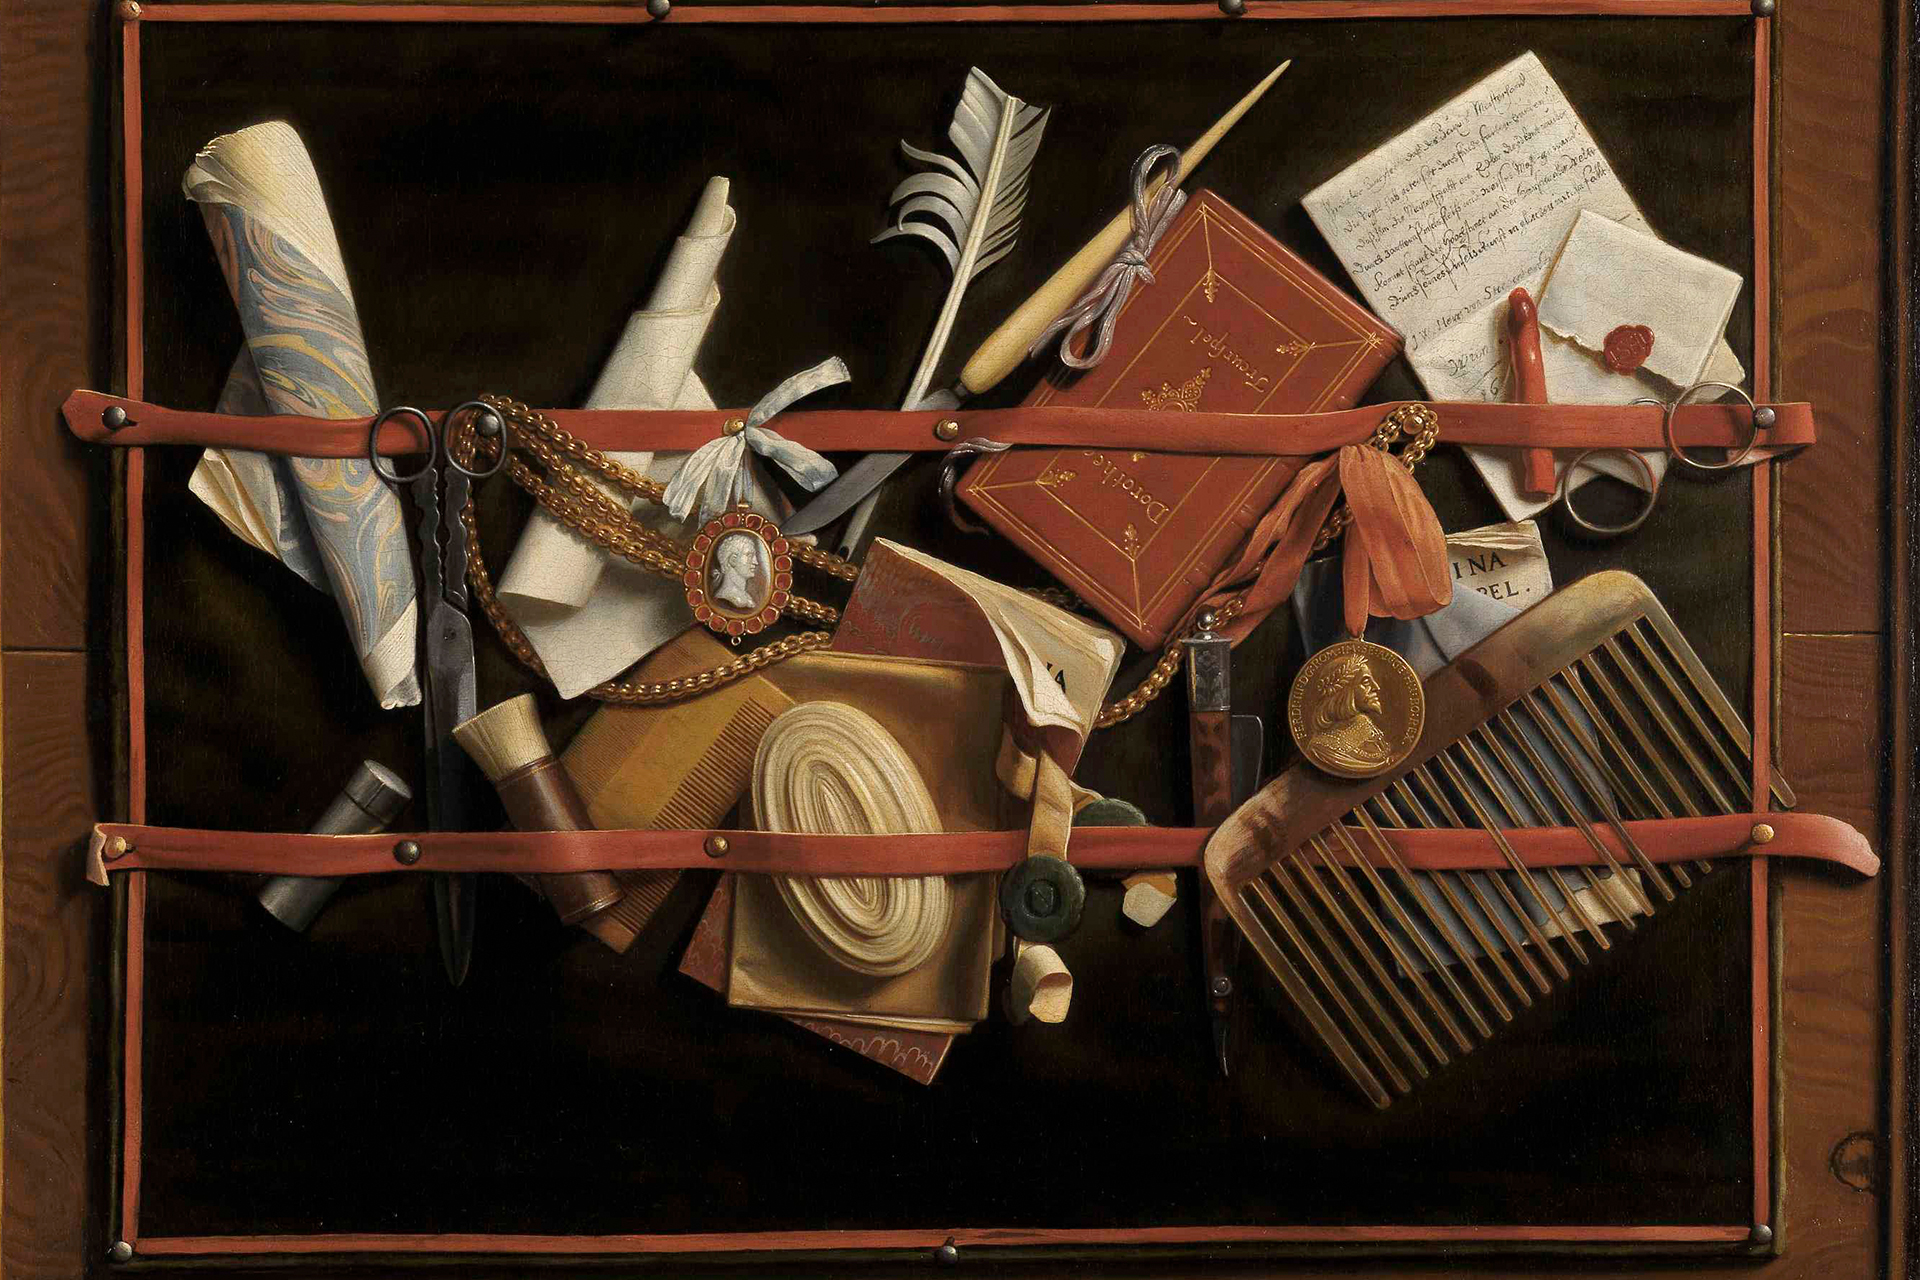 Abbildung des Gemäldes "Augenbetrüger-Stillleben" mit zahlreichen abgebildeten Accessoires des Künstlers.